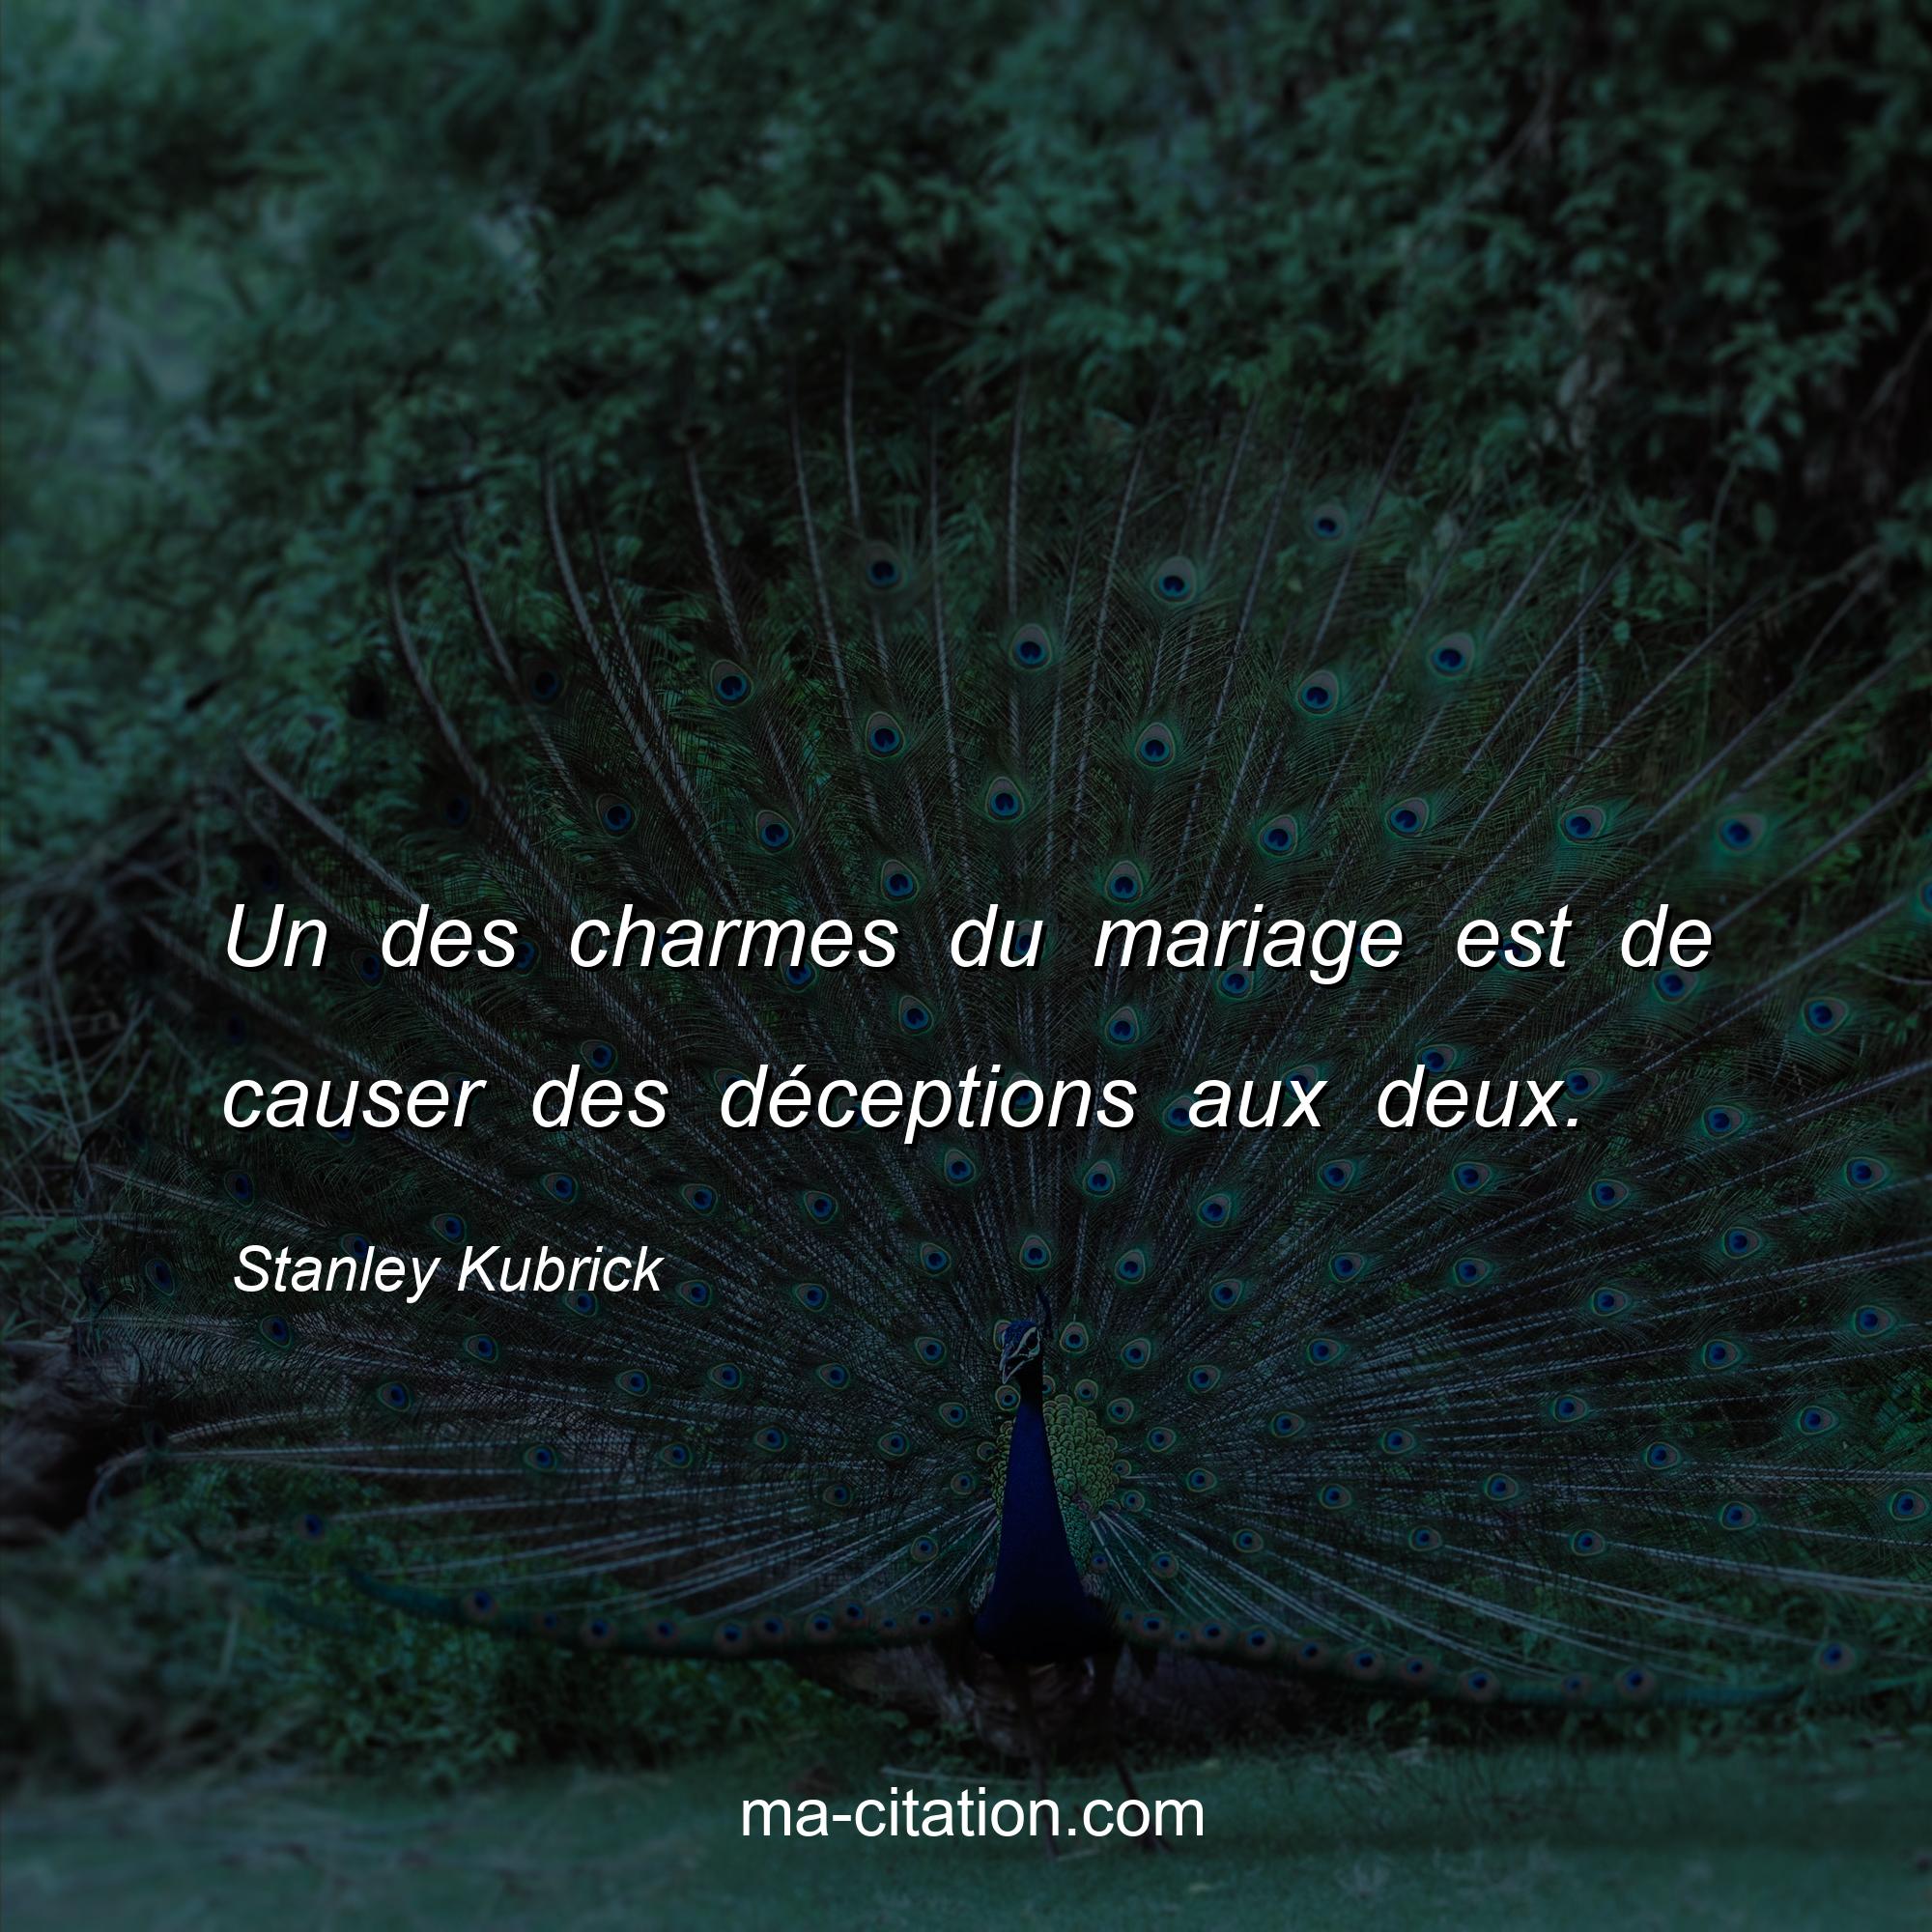 Stanley Kubrick : Un des charmes du mariage est de causer des déceptions aux deux.